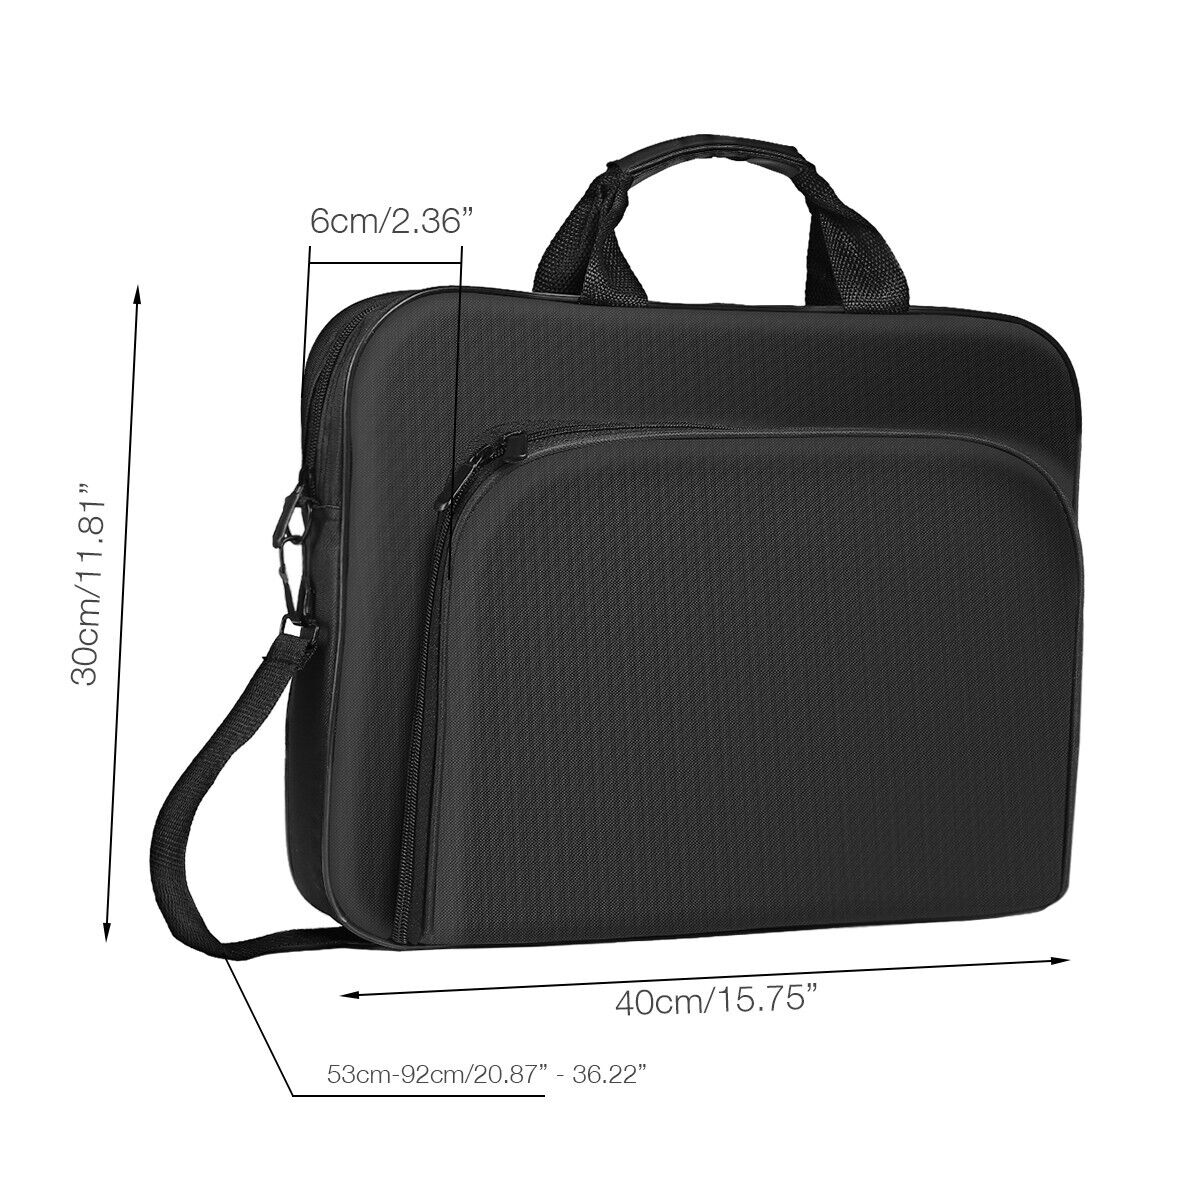 Branded Laptop Bag Case With Shoulder Strap For 15'' 13'' 14'' inch HP Lenovo Asus Mac